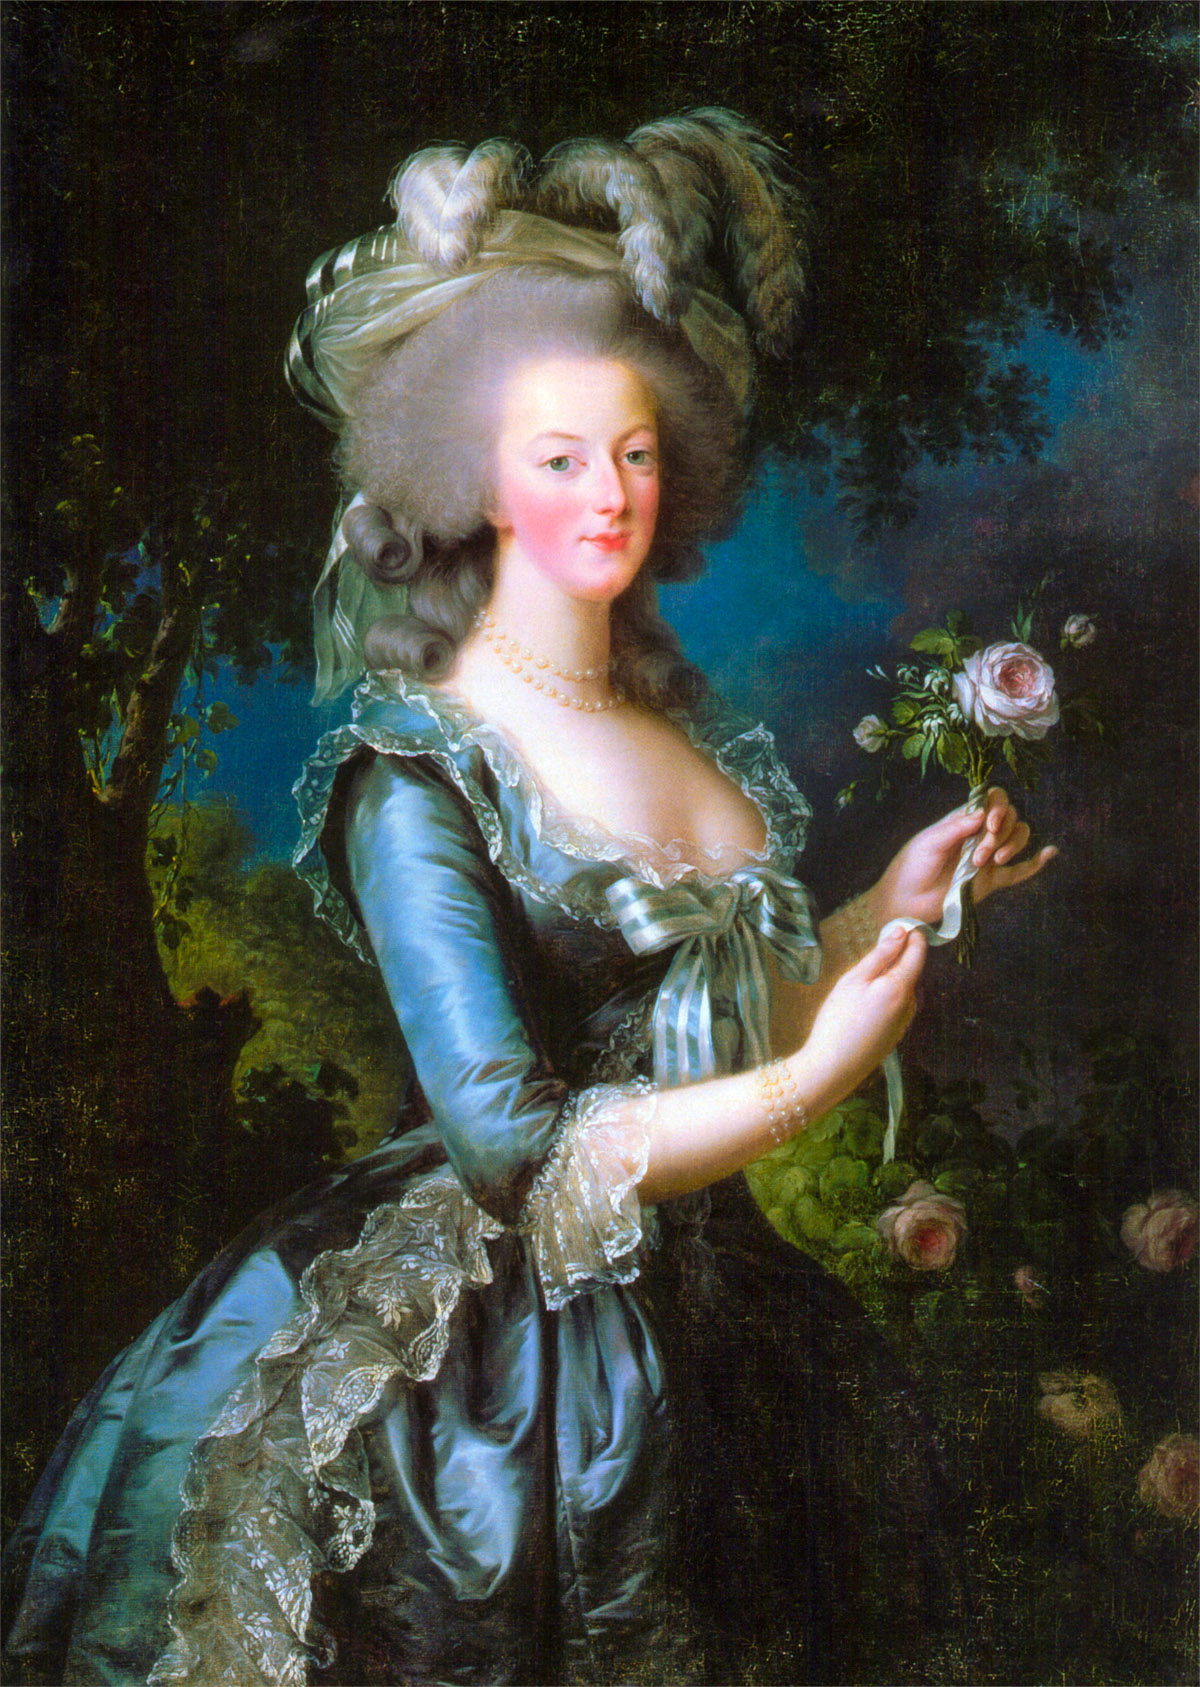 Marie Antoinette in 1783